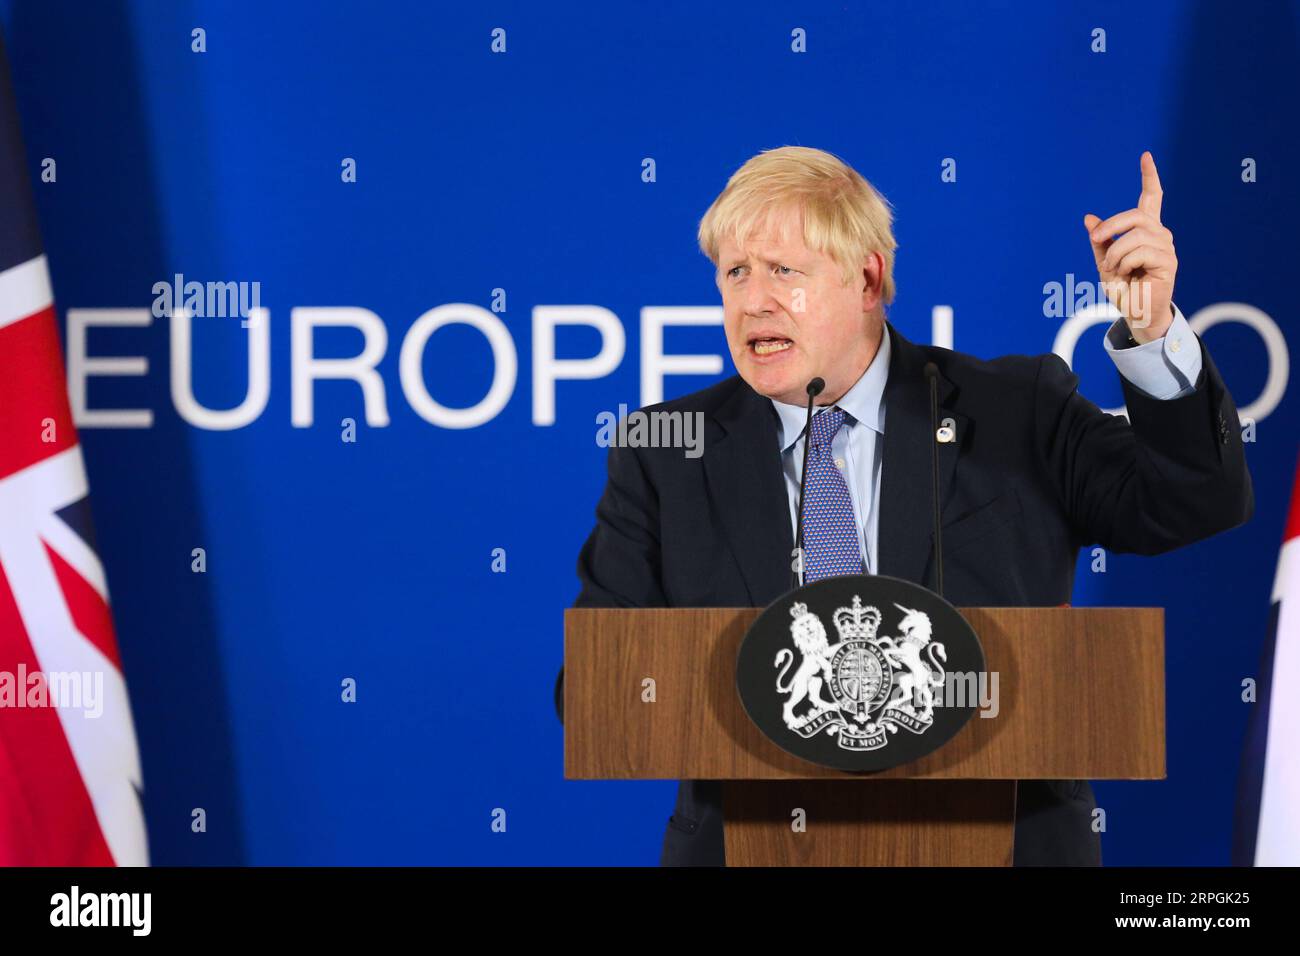 191017 -- BRUXELLES, le 17 octobre 2019 -- le Premier ministre britannique Boris Johnson assiste à une conférence de presse lors d'un sommet de l'UE à Bruxelles, en Belgique, le 17 octobre 2019. Le sommet de deux jours a débuté jeudi. L'Union européenne l'UE et la Grande-Bretagne ont conclu un nouvel accord sur le Brexit, a déclaré jeudi le président de la Commission européenne Jean-Claude Juncker. Zheng Huansong BELGIQUE-BRUXELLES-UE-SOMMET-NOUVEL ACCORD SUR LE BREXIT ZhangxCheng PUBLICATIONxNOTxINxCHN Banque D'Images